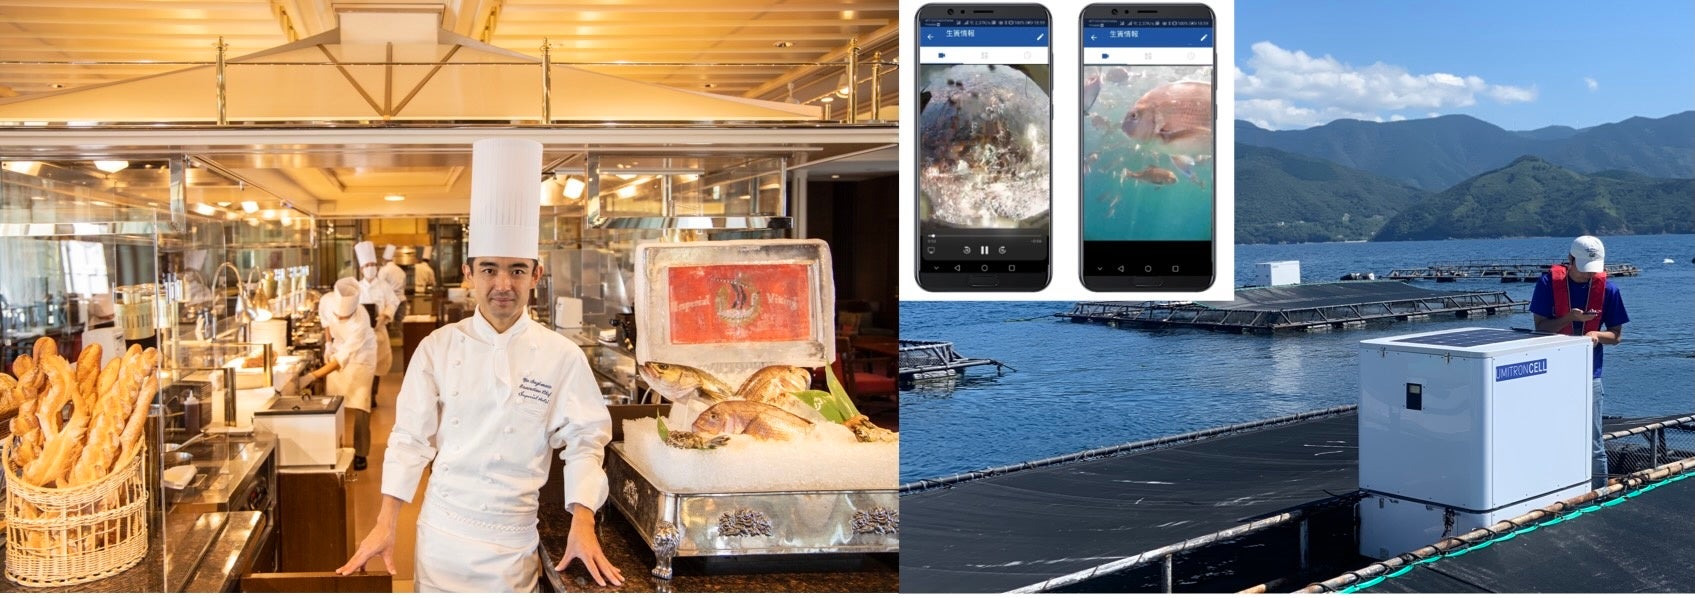 ウミトロン、帝国ホテルと協働し、親子で海の環境や持続可能性について学ぶ特別イベントを開催。-「杉本東京料理長と学ぶセミナー＆ランチコース」にて「うみとさち」ASC認証真鯛を提供-のサブ画像1